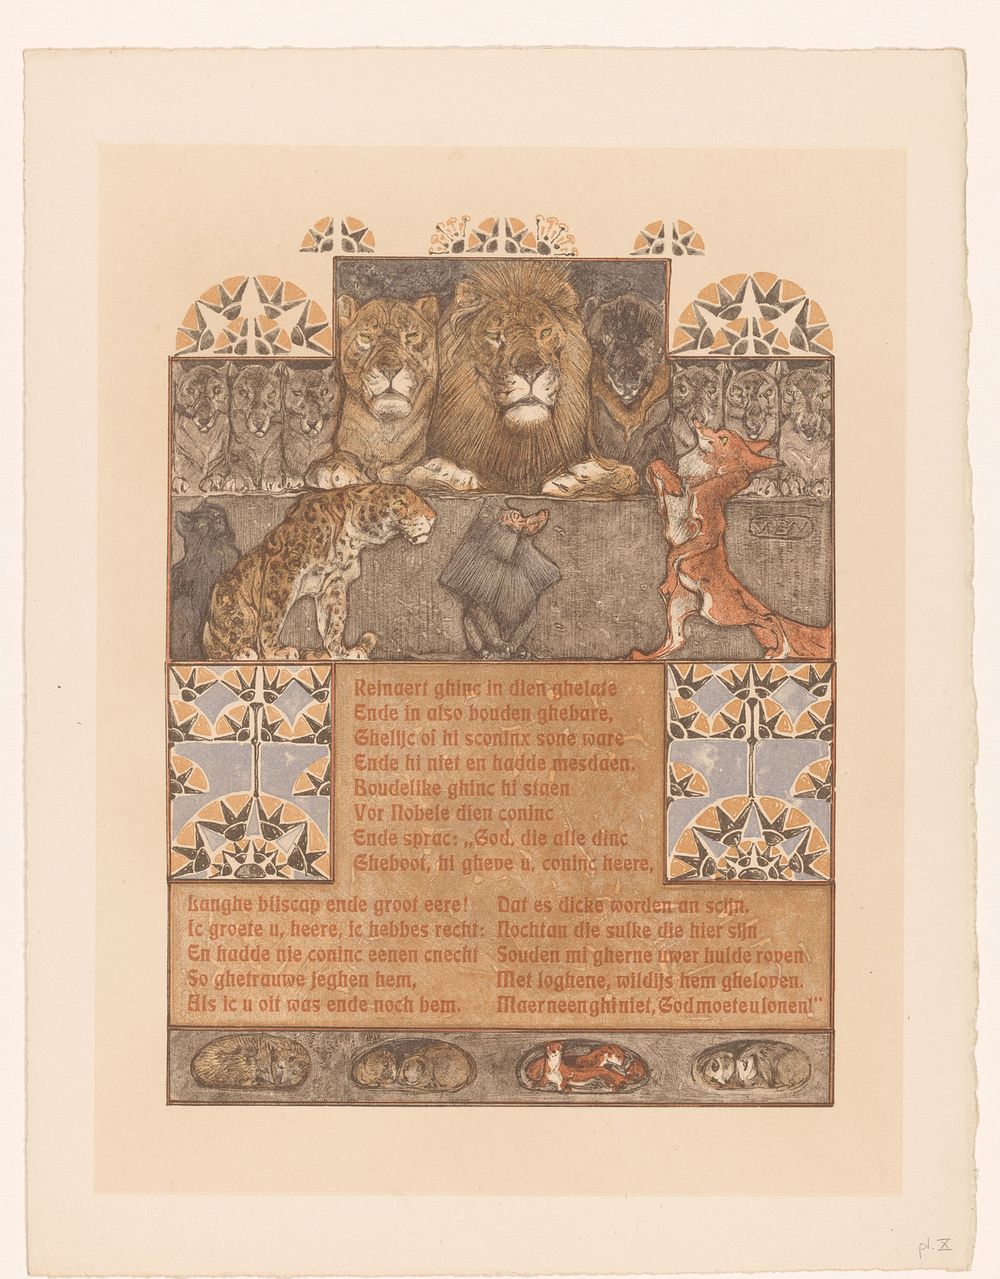 Vos (Reinaert) voor leeuw (Nobel) en andere dieren (1910) by Bernard Willem Wierink